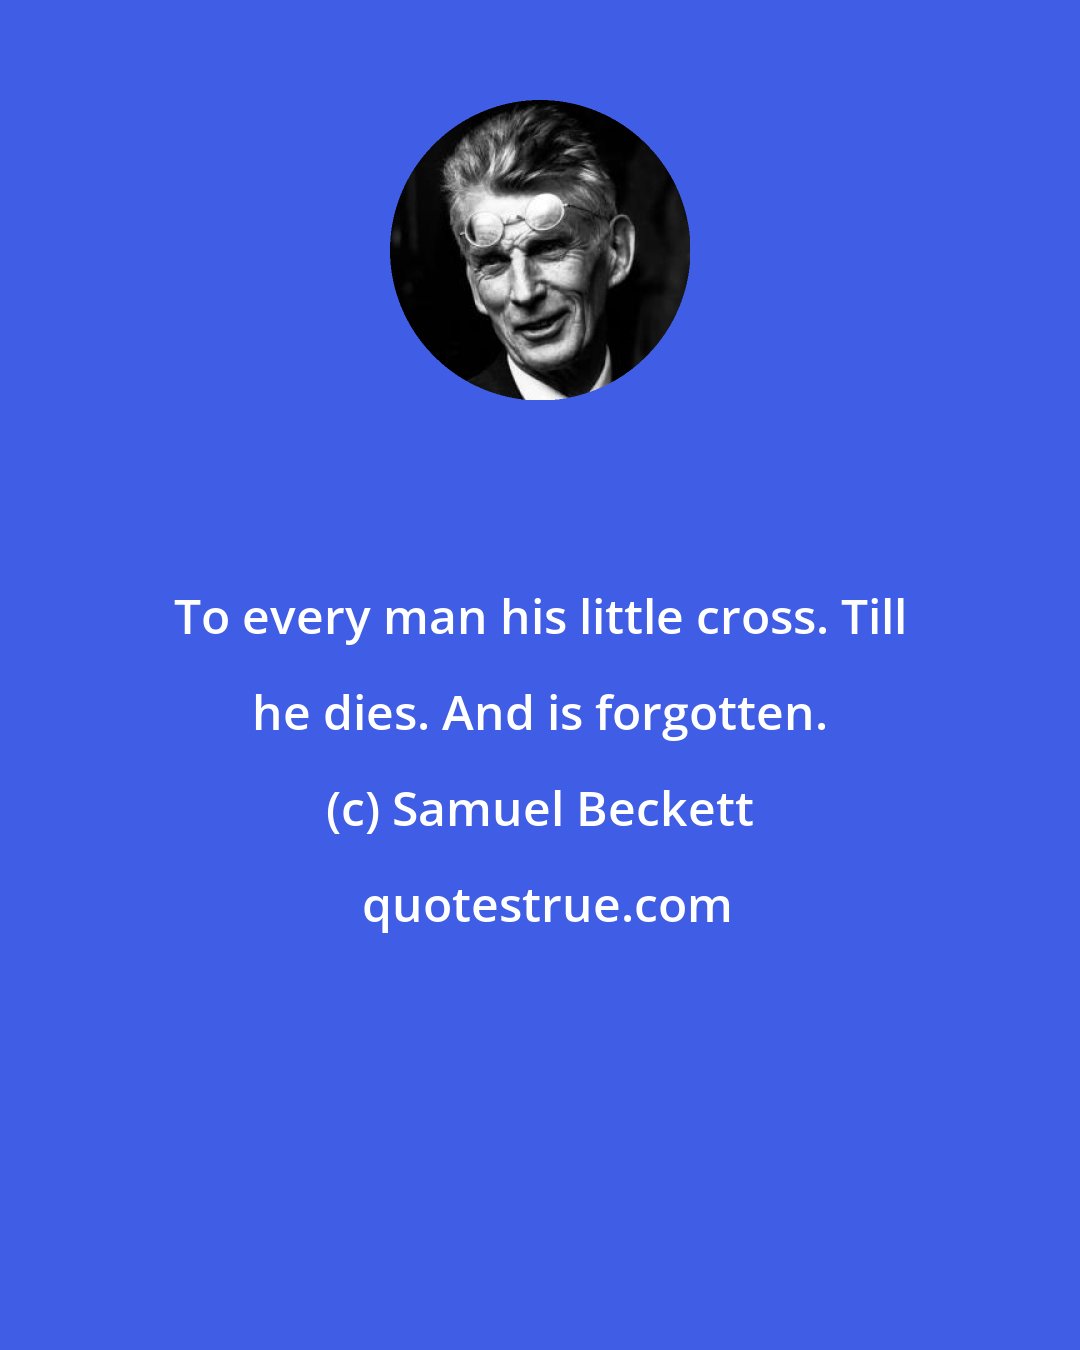 Samuel Beckett: To every man his little cross. Till he dies. And is forgotten.